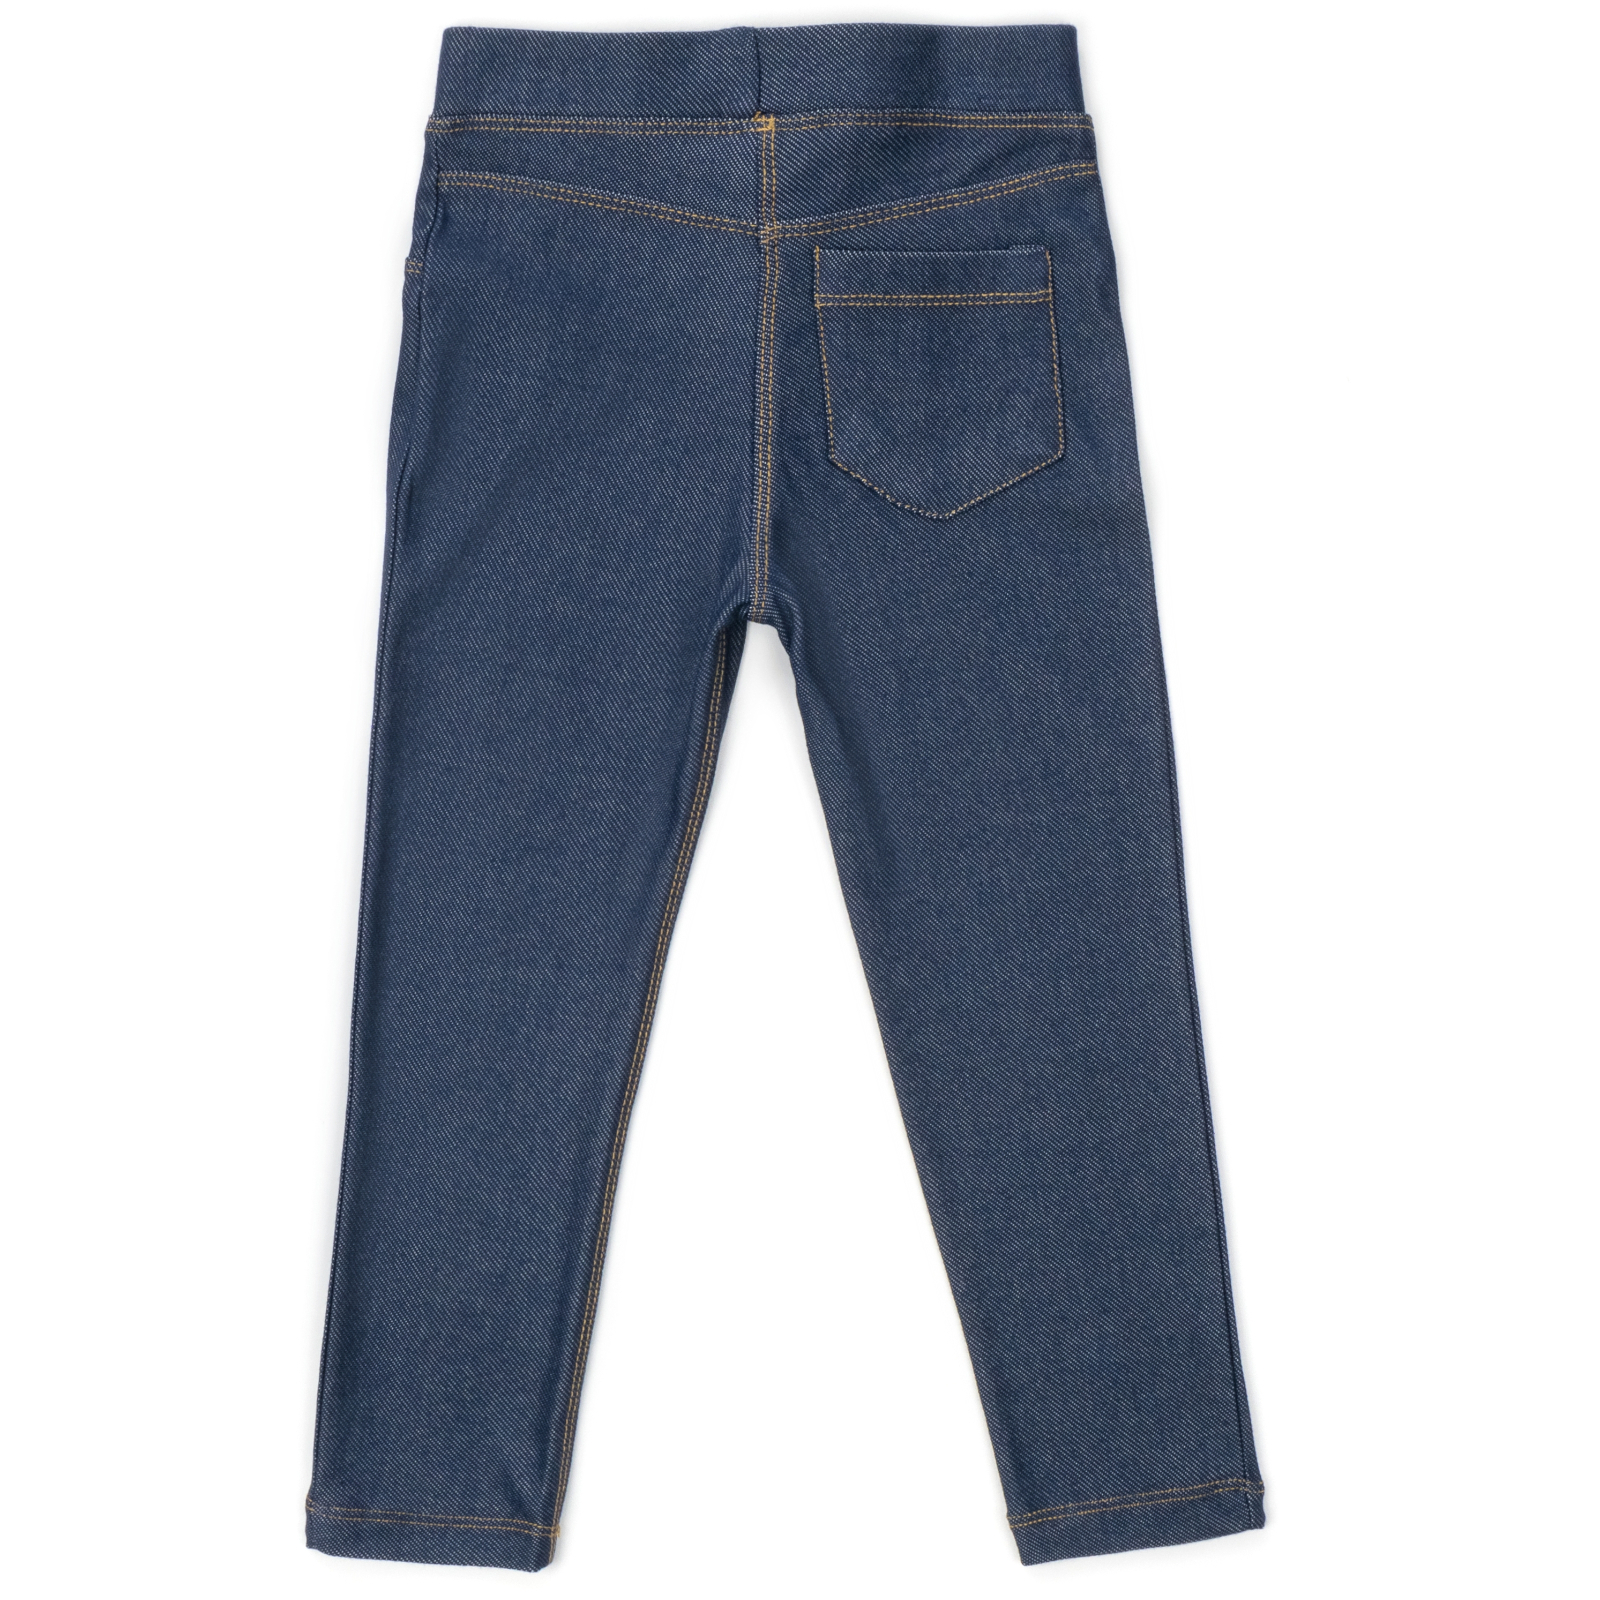 Лосины Breeze трикотажные (4415-110G-jeans) изображение 2